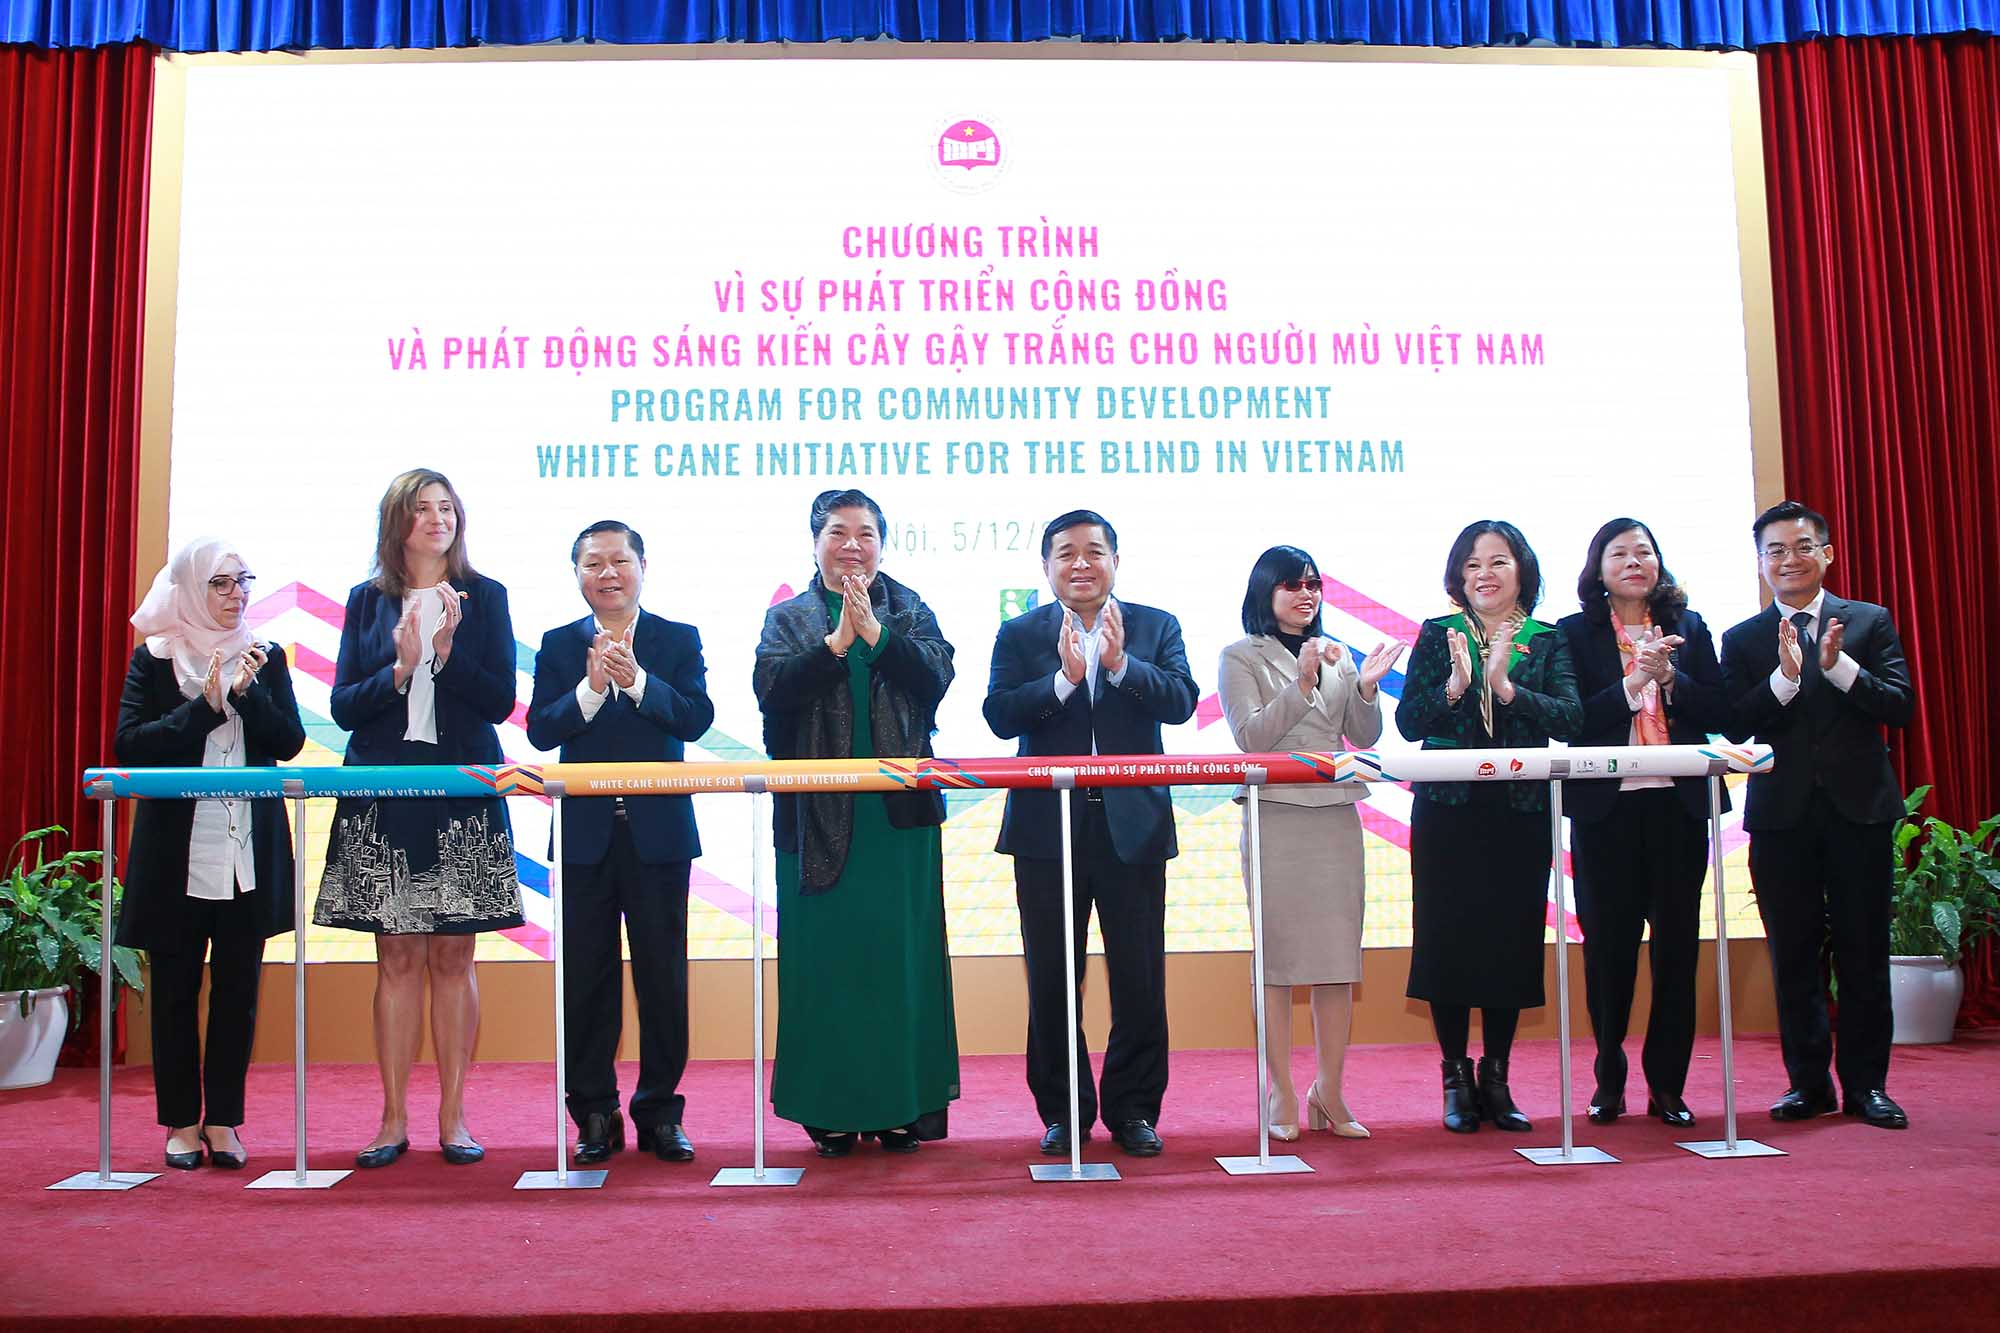 Sáng kiến Cây gậy trắng cho người mù Việt Nam nhận được sự quan tâm lớn của nhiều tổ chức, cá nhân trong nước và quốc tế (Ảnh: Chí Cường)